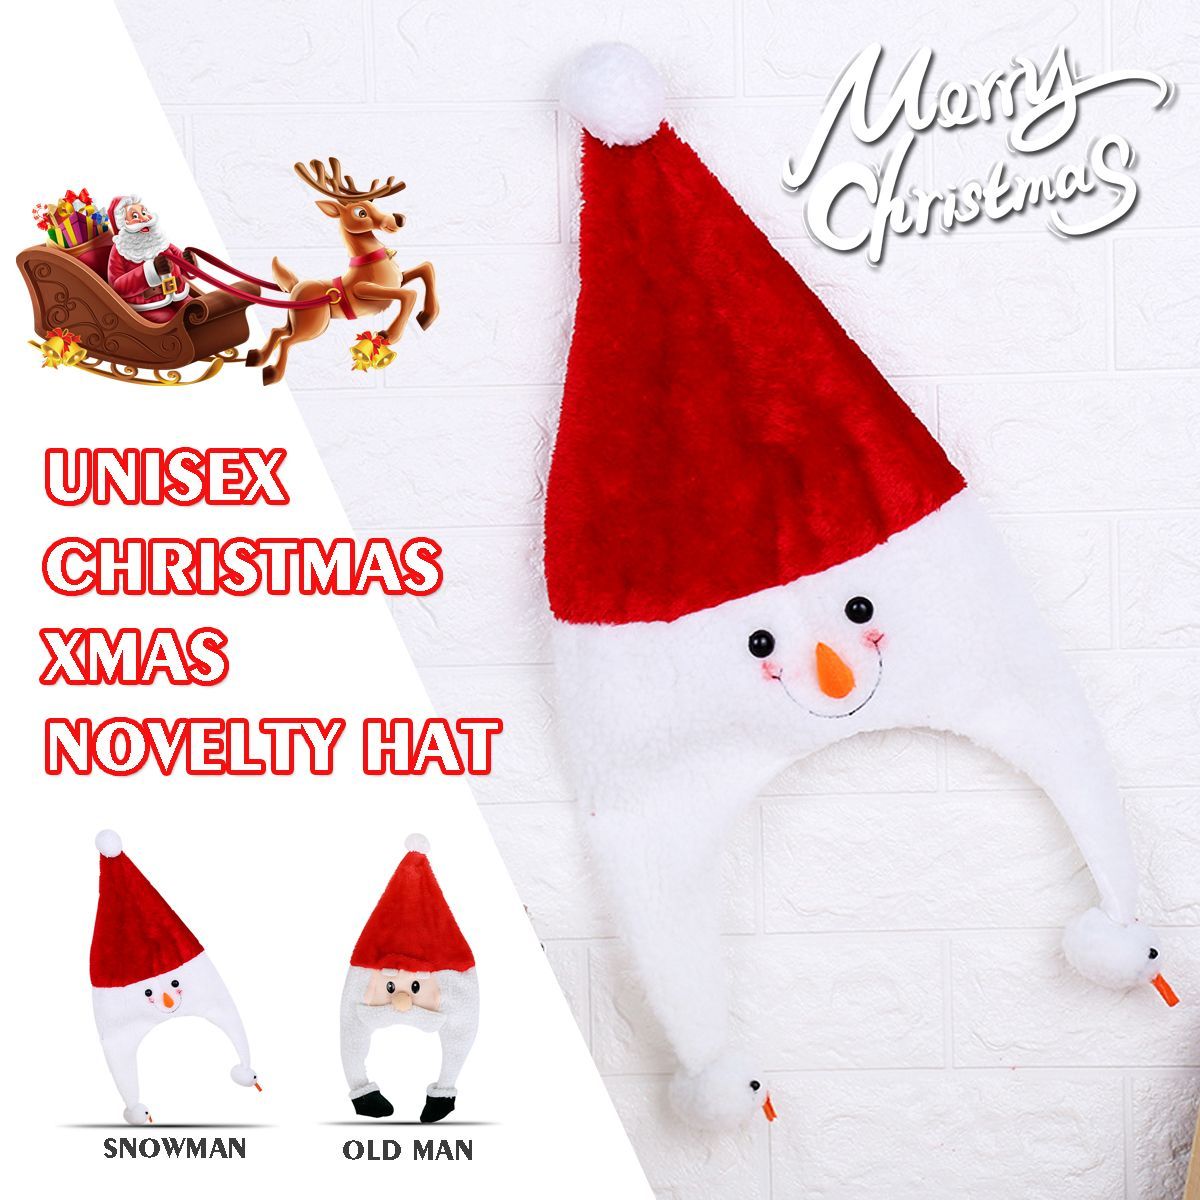 Unisex-Christmas-Xmas-Novelty-Plush-Hat-Santa-Claus-Hat-Holiday-Decoration-1747495